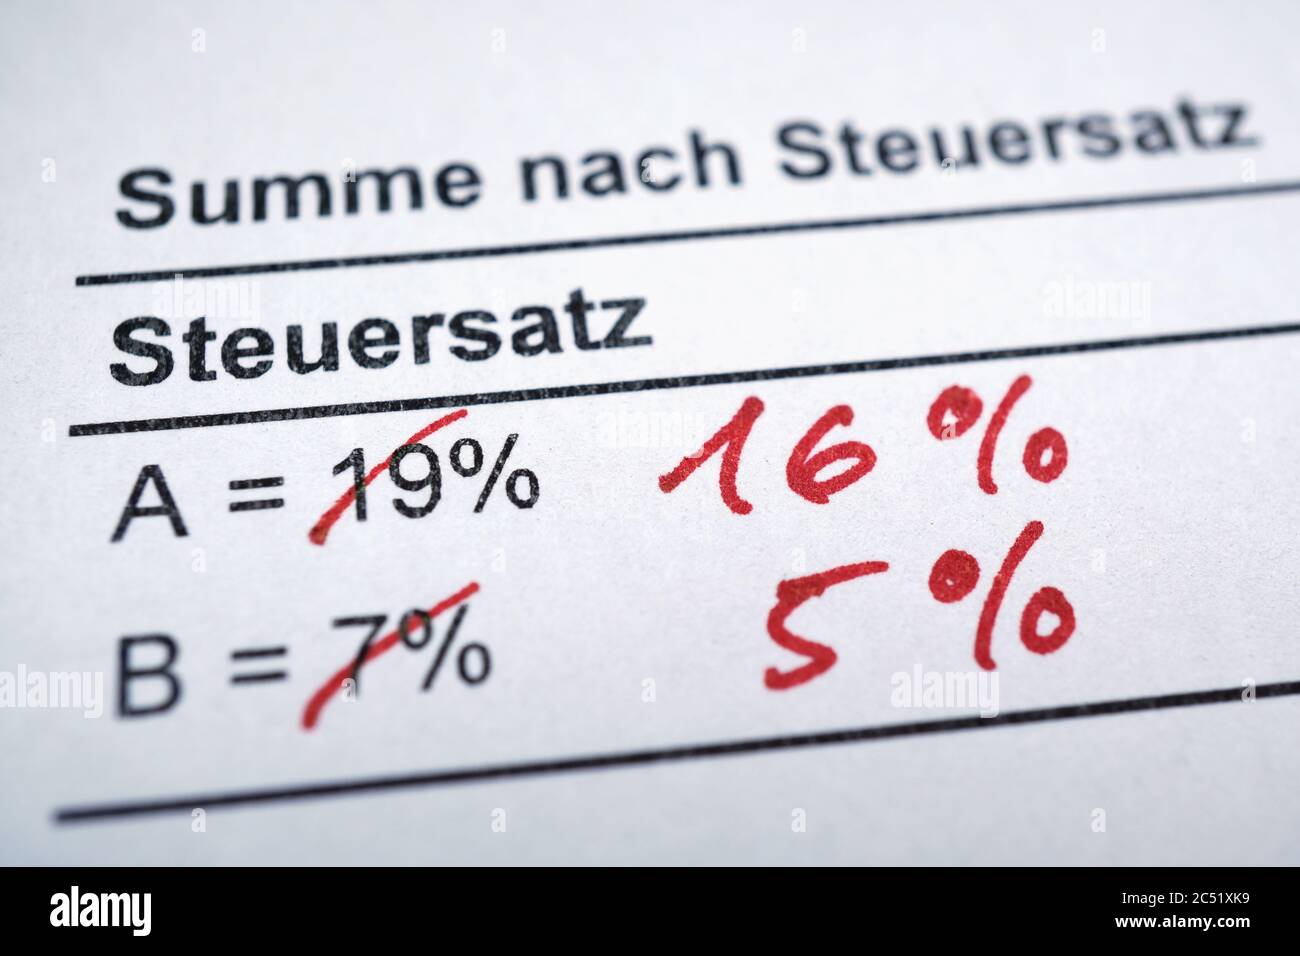 Mehrwertsteuer o MwSt - imposta sul valore aggiunto in tedesco - riduzione delle aliquote dal 19 al 16 e dal 7 al 5% in Germania Foto Stock